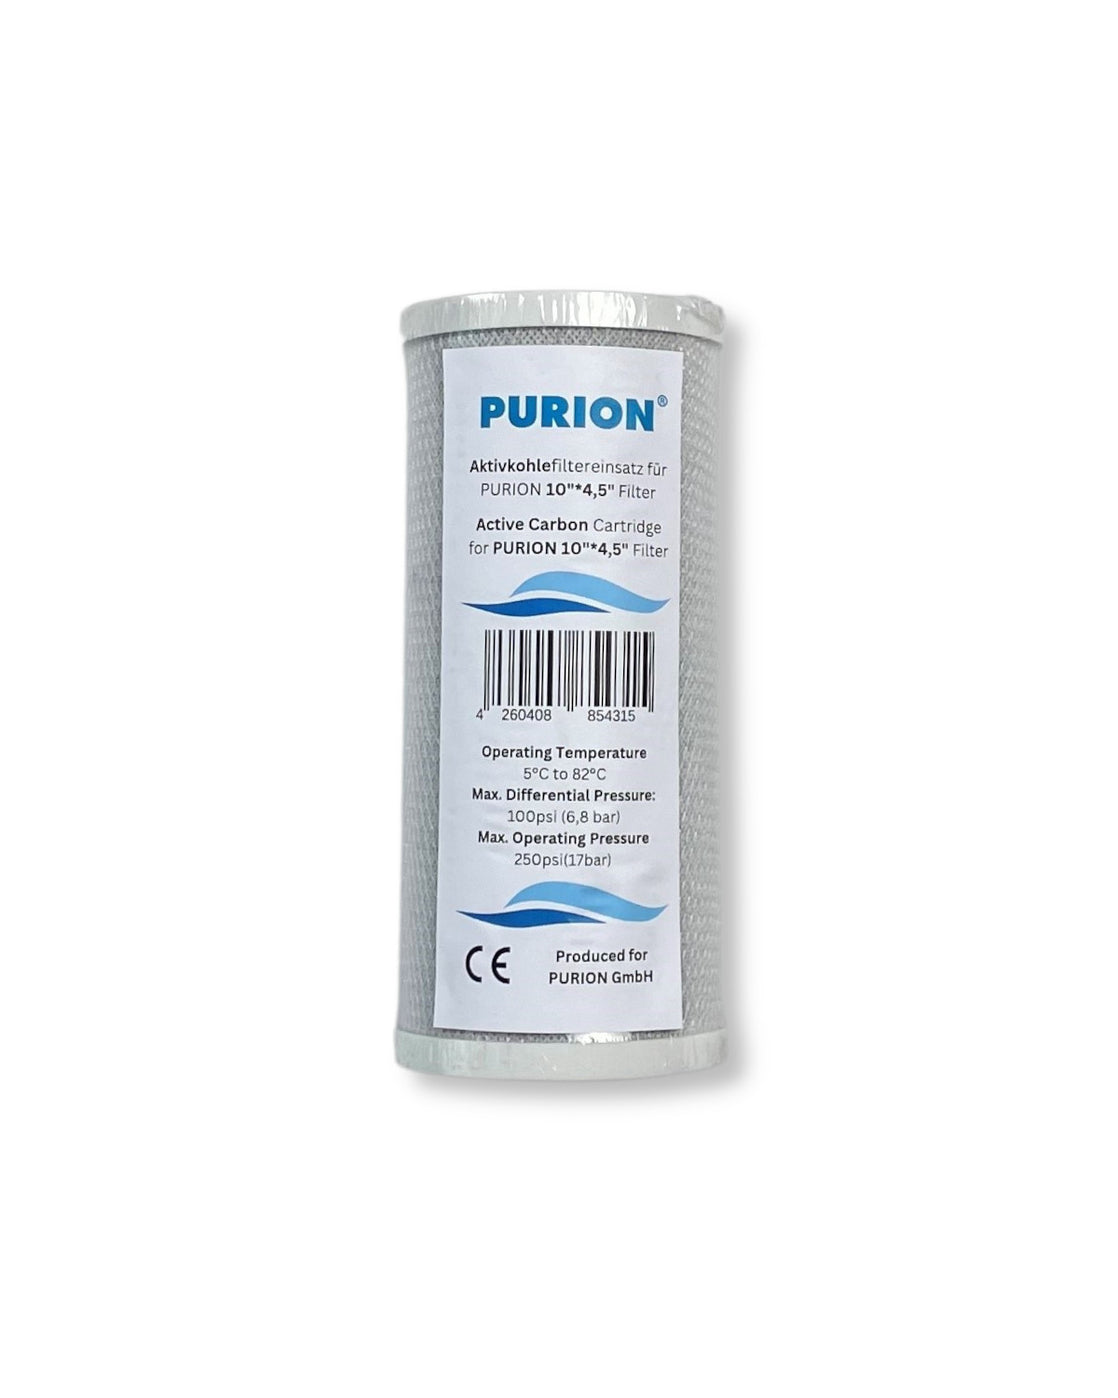 Die PURION doppelter Big Blue Vorfilter Wasserfilterkartusche der Purion GmbH für die Wasserreinigung.